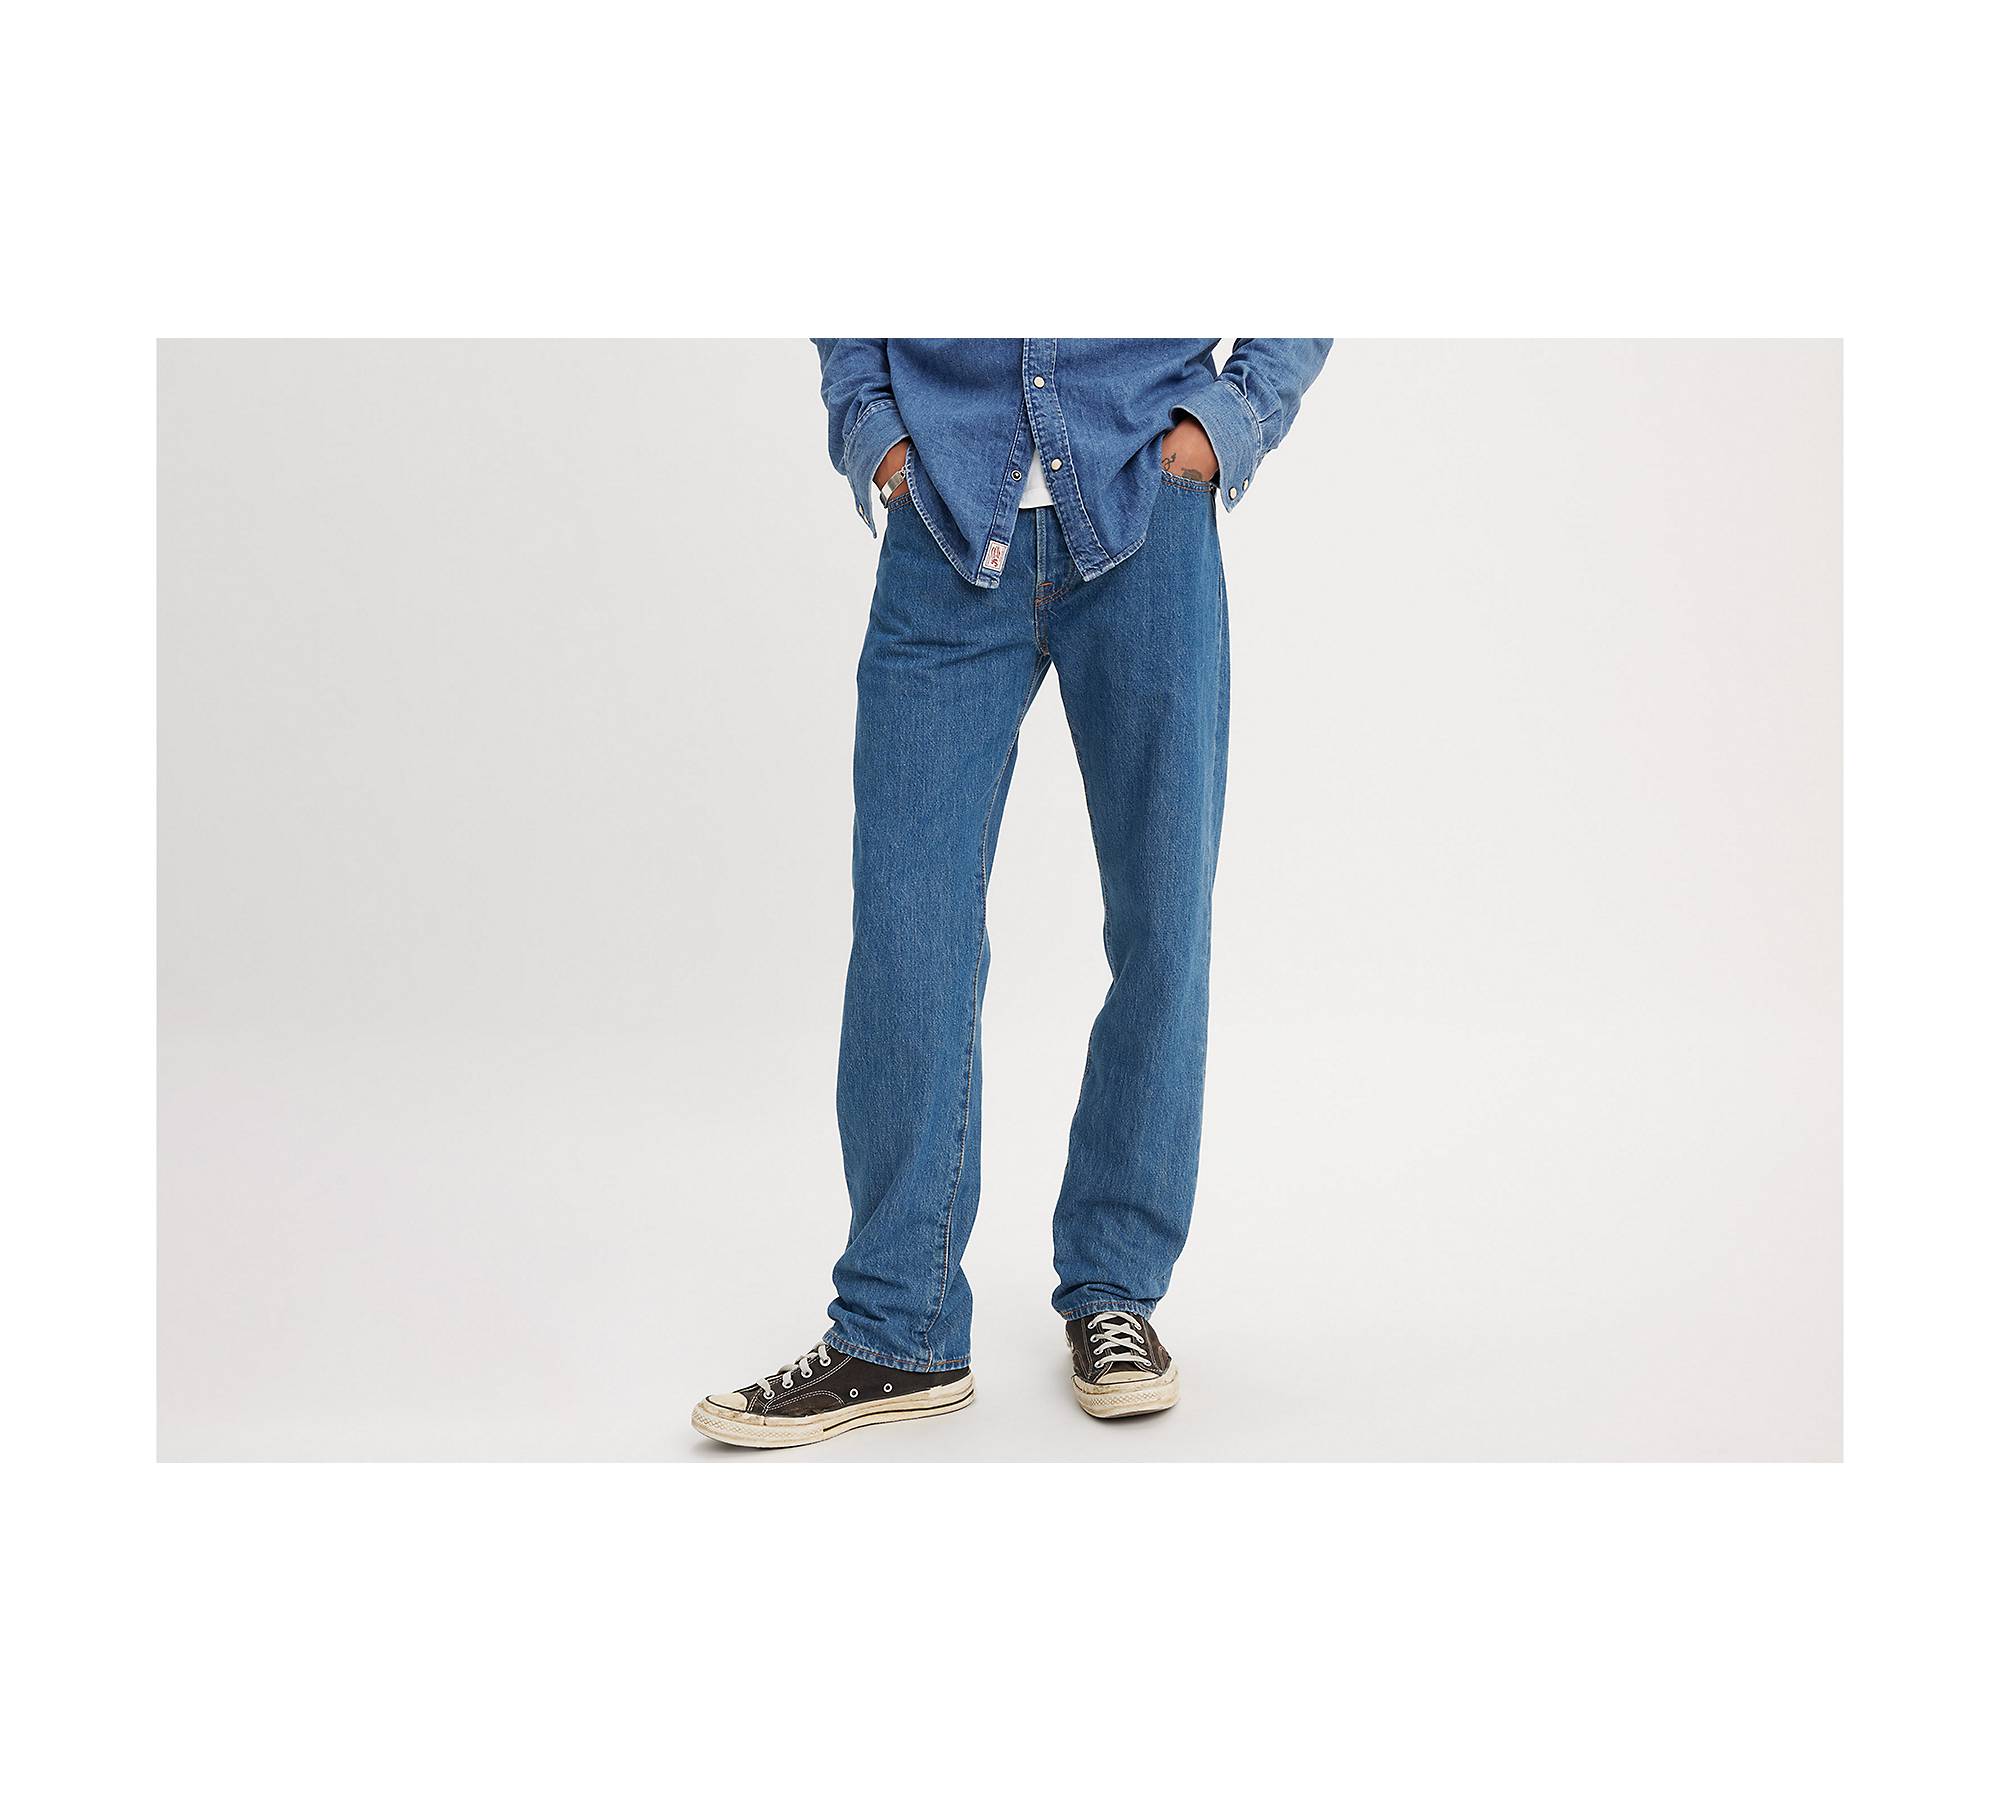 LEVIS Jeans LEVI'S 530 Blue Hipster Fit Cigarette Leg VINTAGE